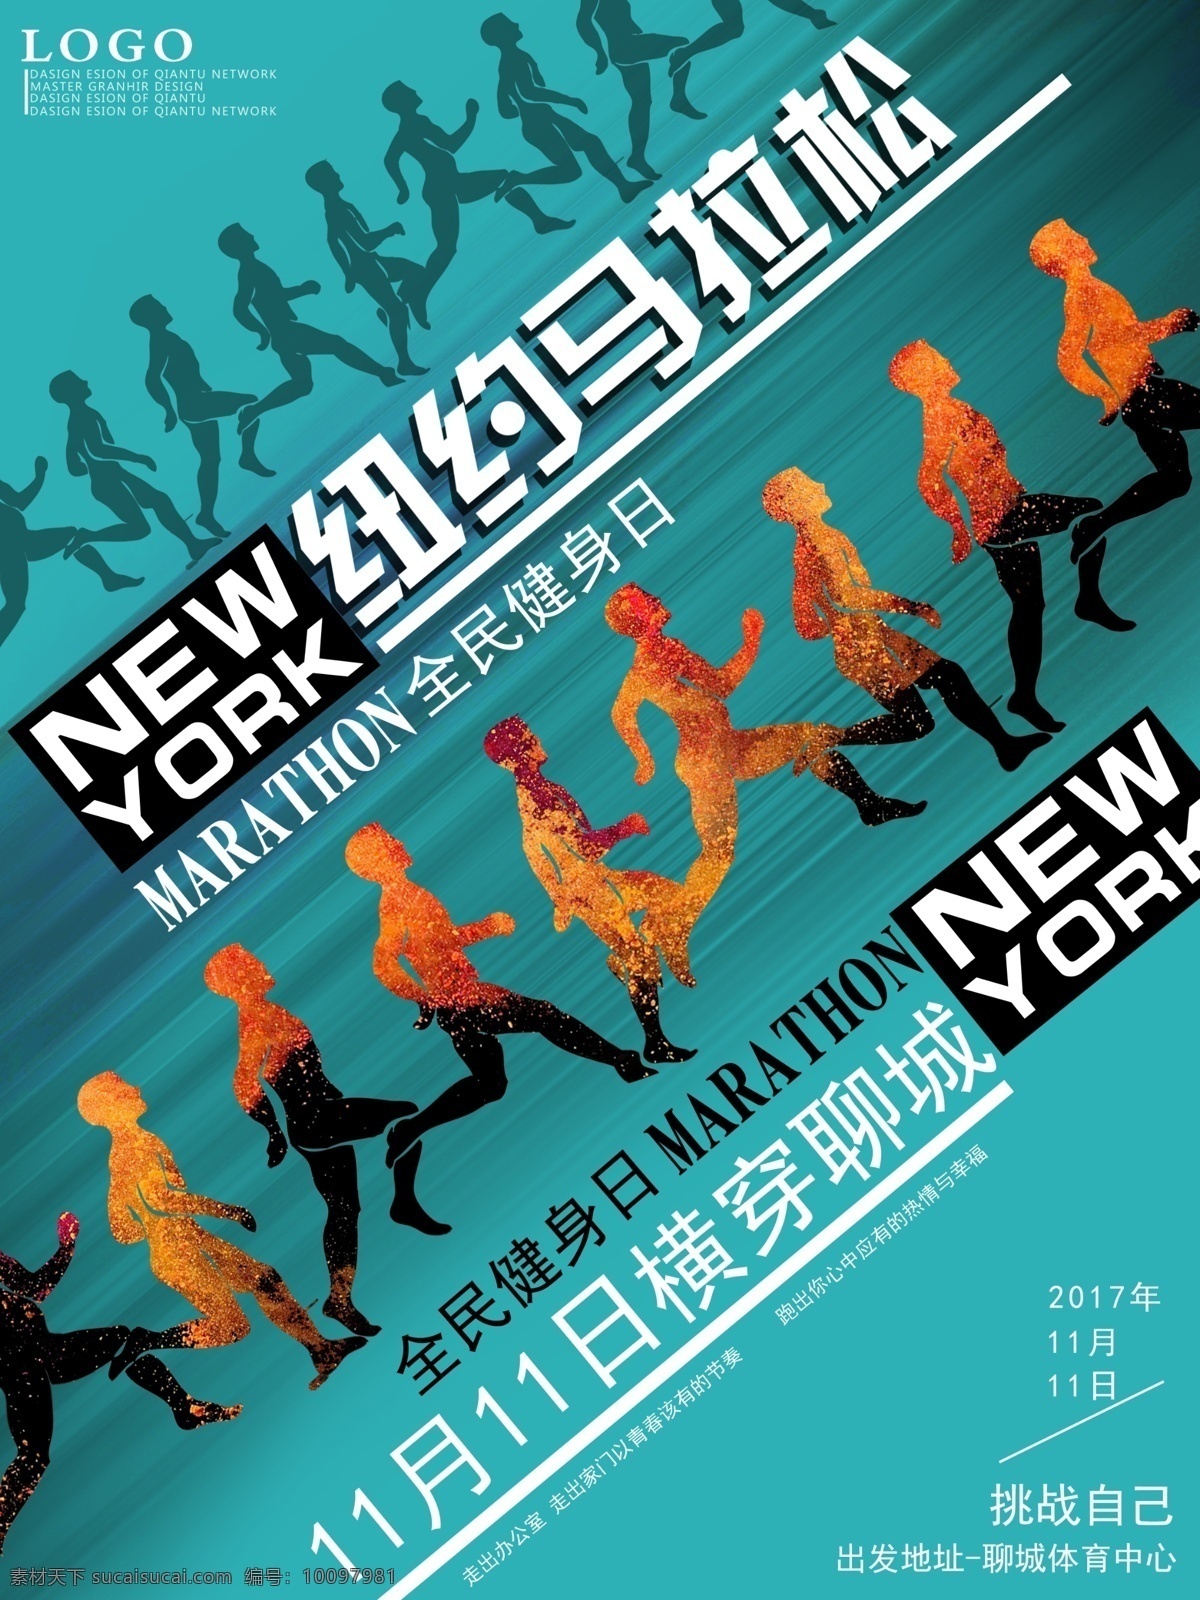 全民 运动 纽约 马拉松 海报 蓝色 线条 简约 全民健身 跑步的人 彩色 体育 人物剪影